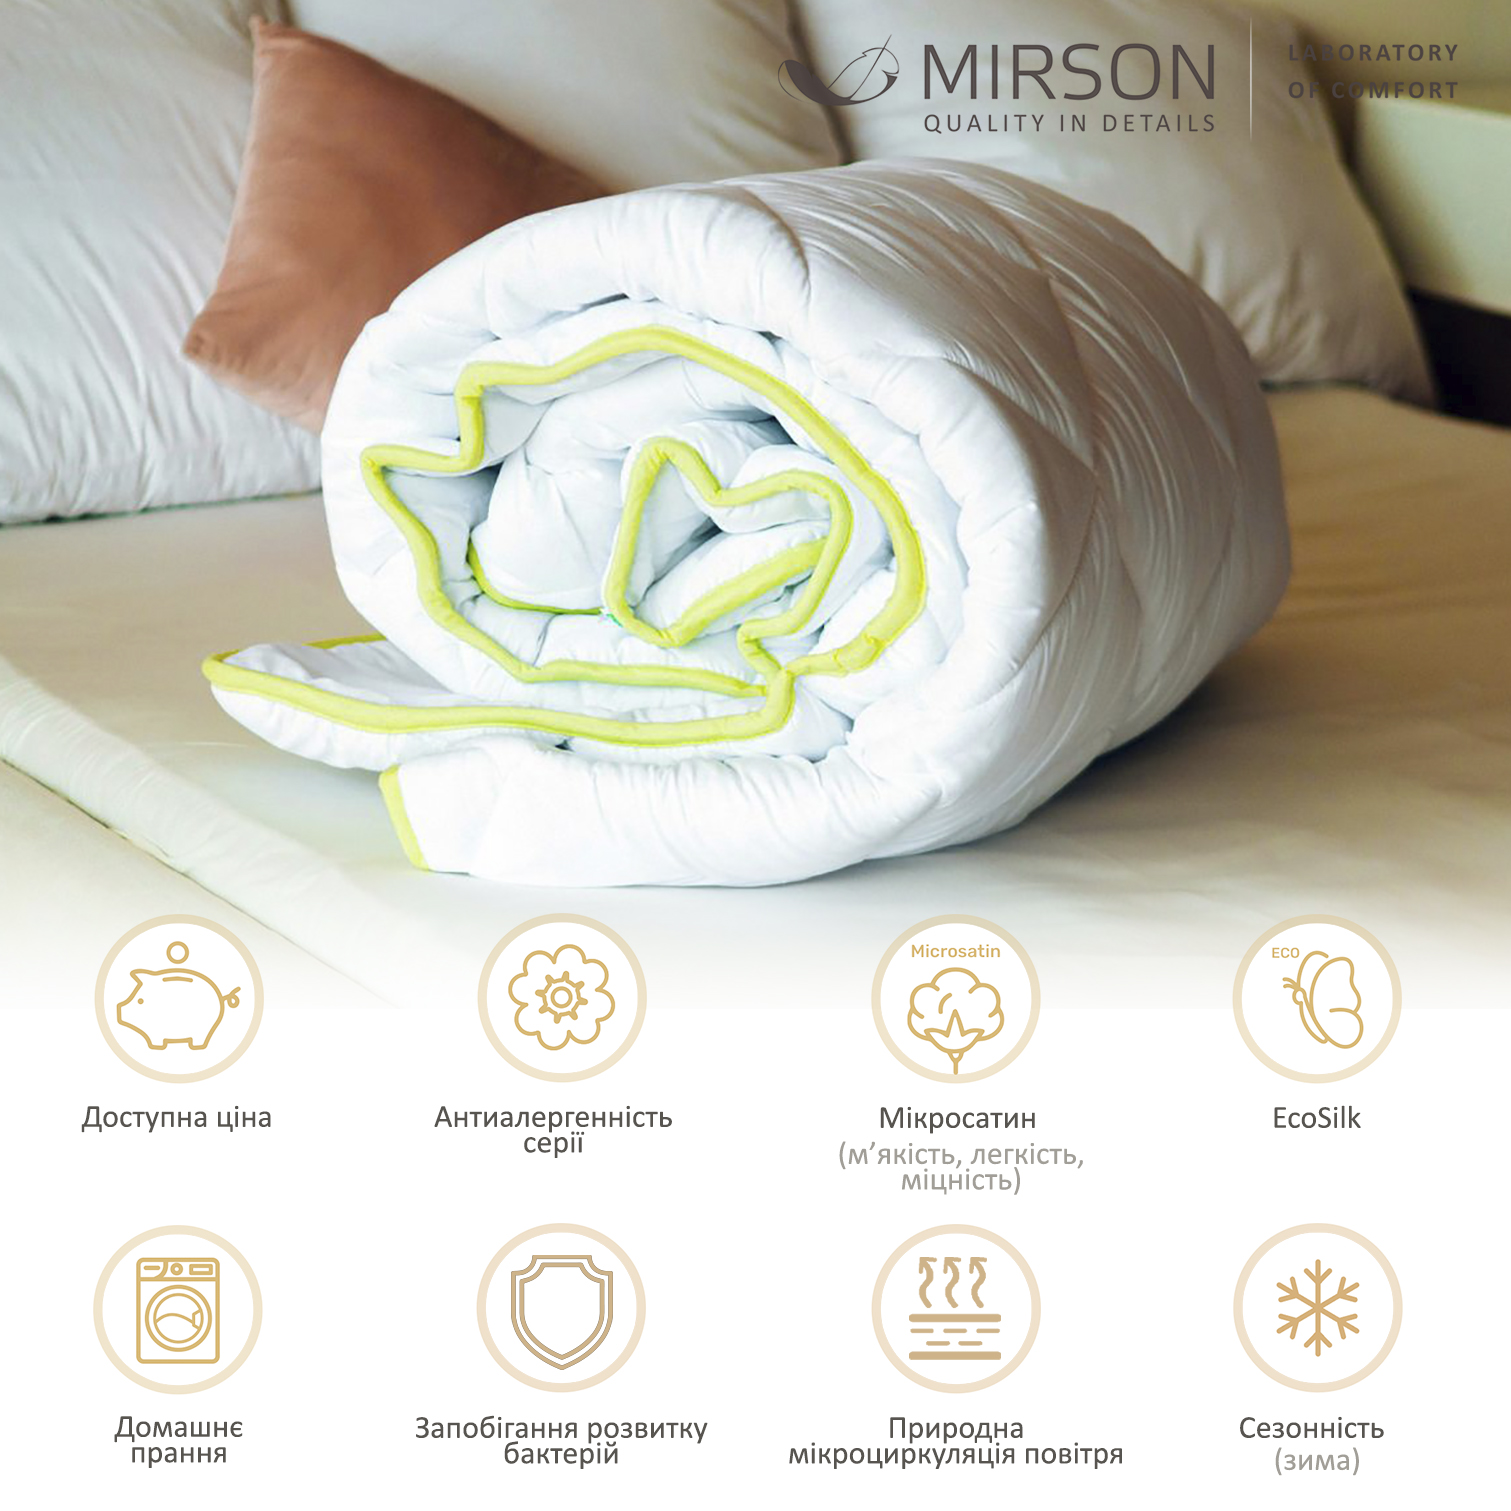 Одеяло антиаллергенное MirSon EcoSilk №003, зимнее, 172x205 см, белое (8062568) - фото 4